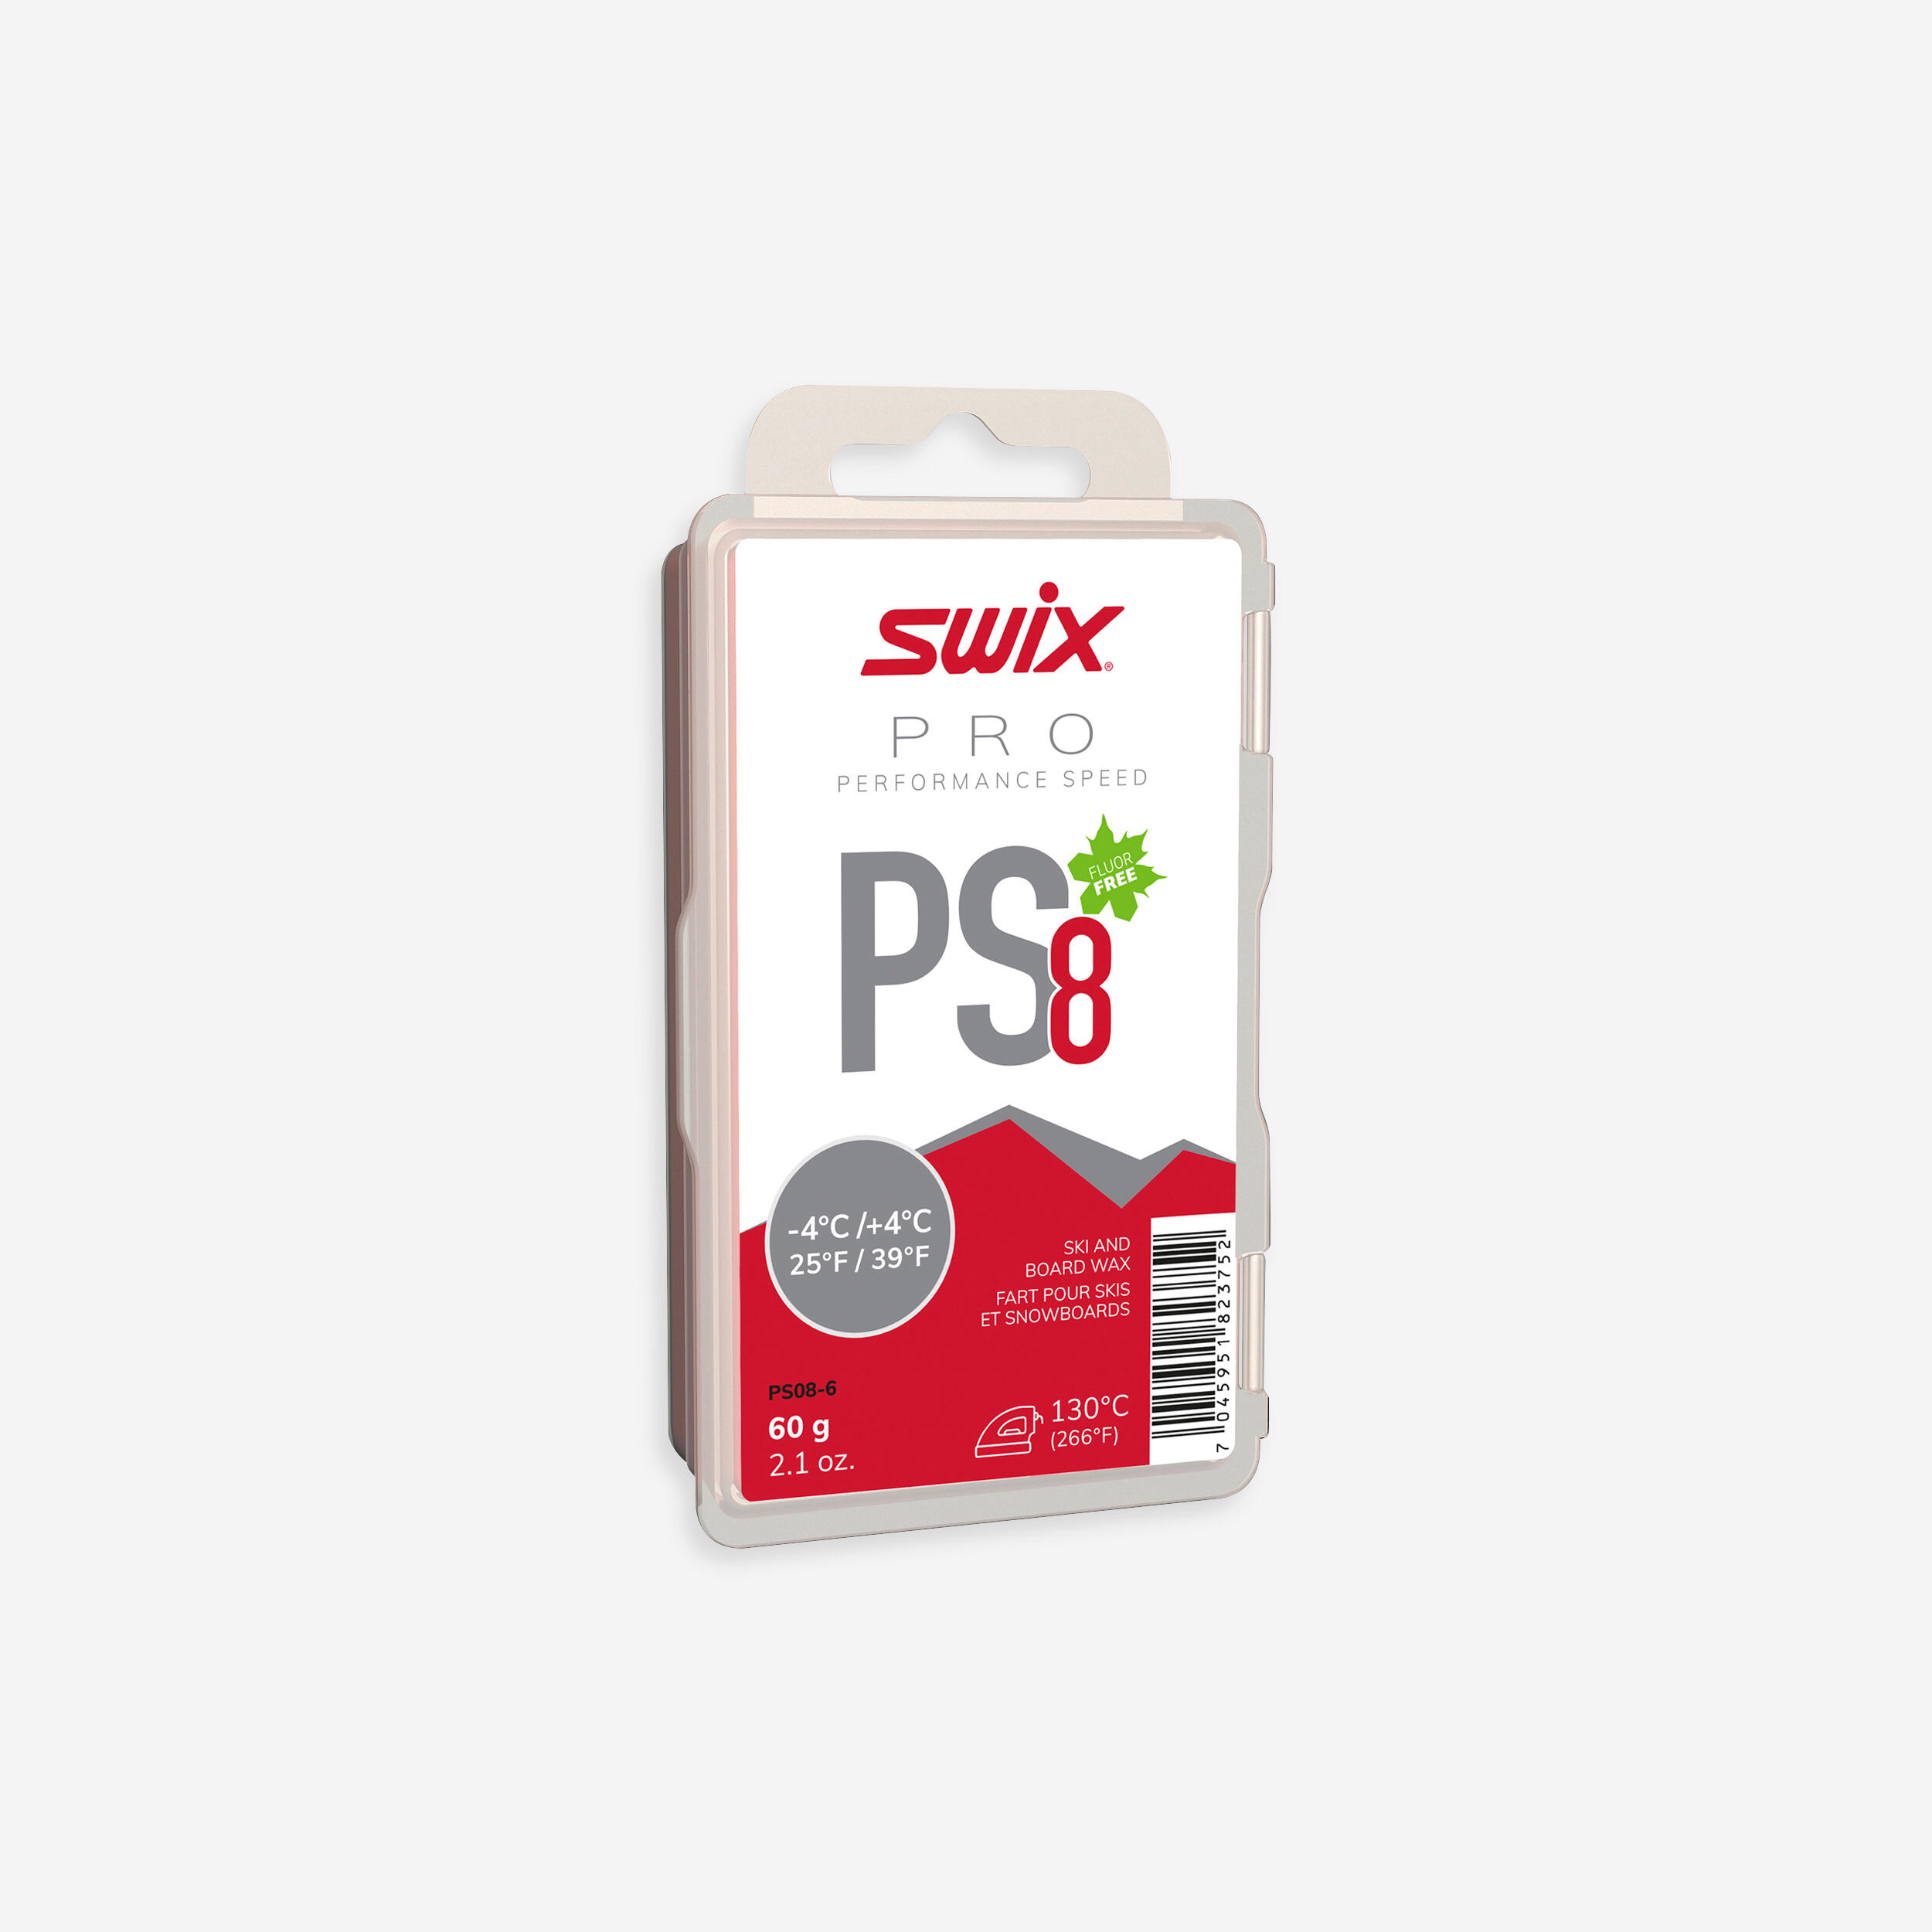 SWIX Wax - PS8, -4°C/+4°C - 60g Red